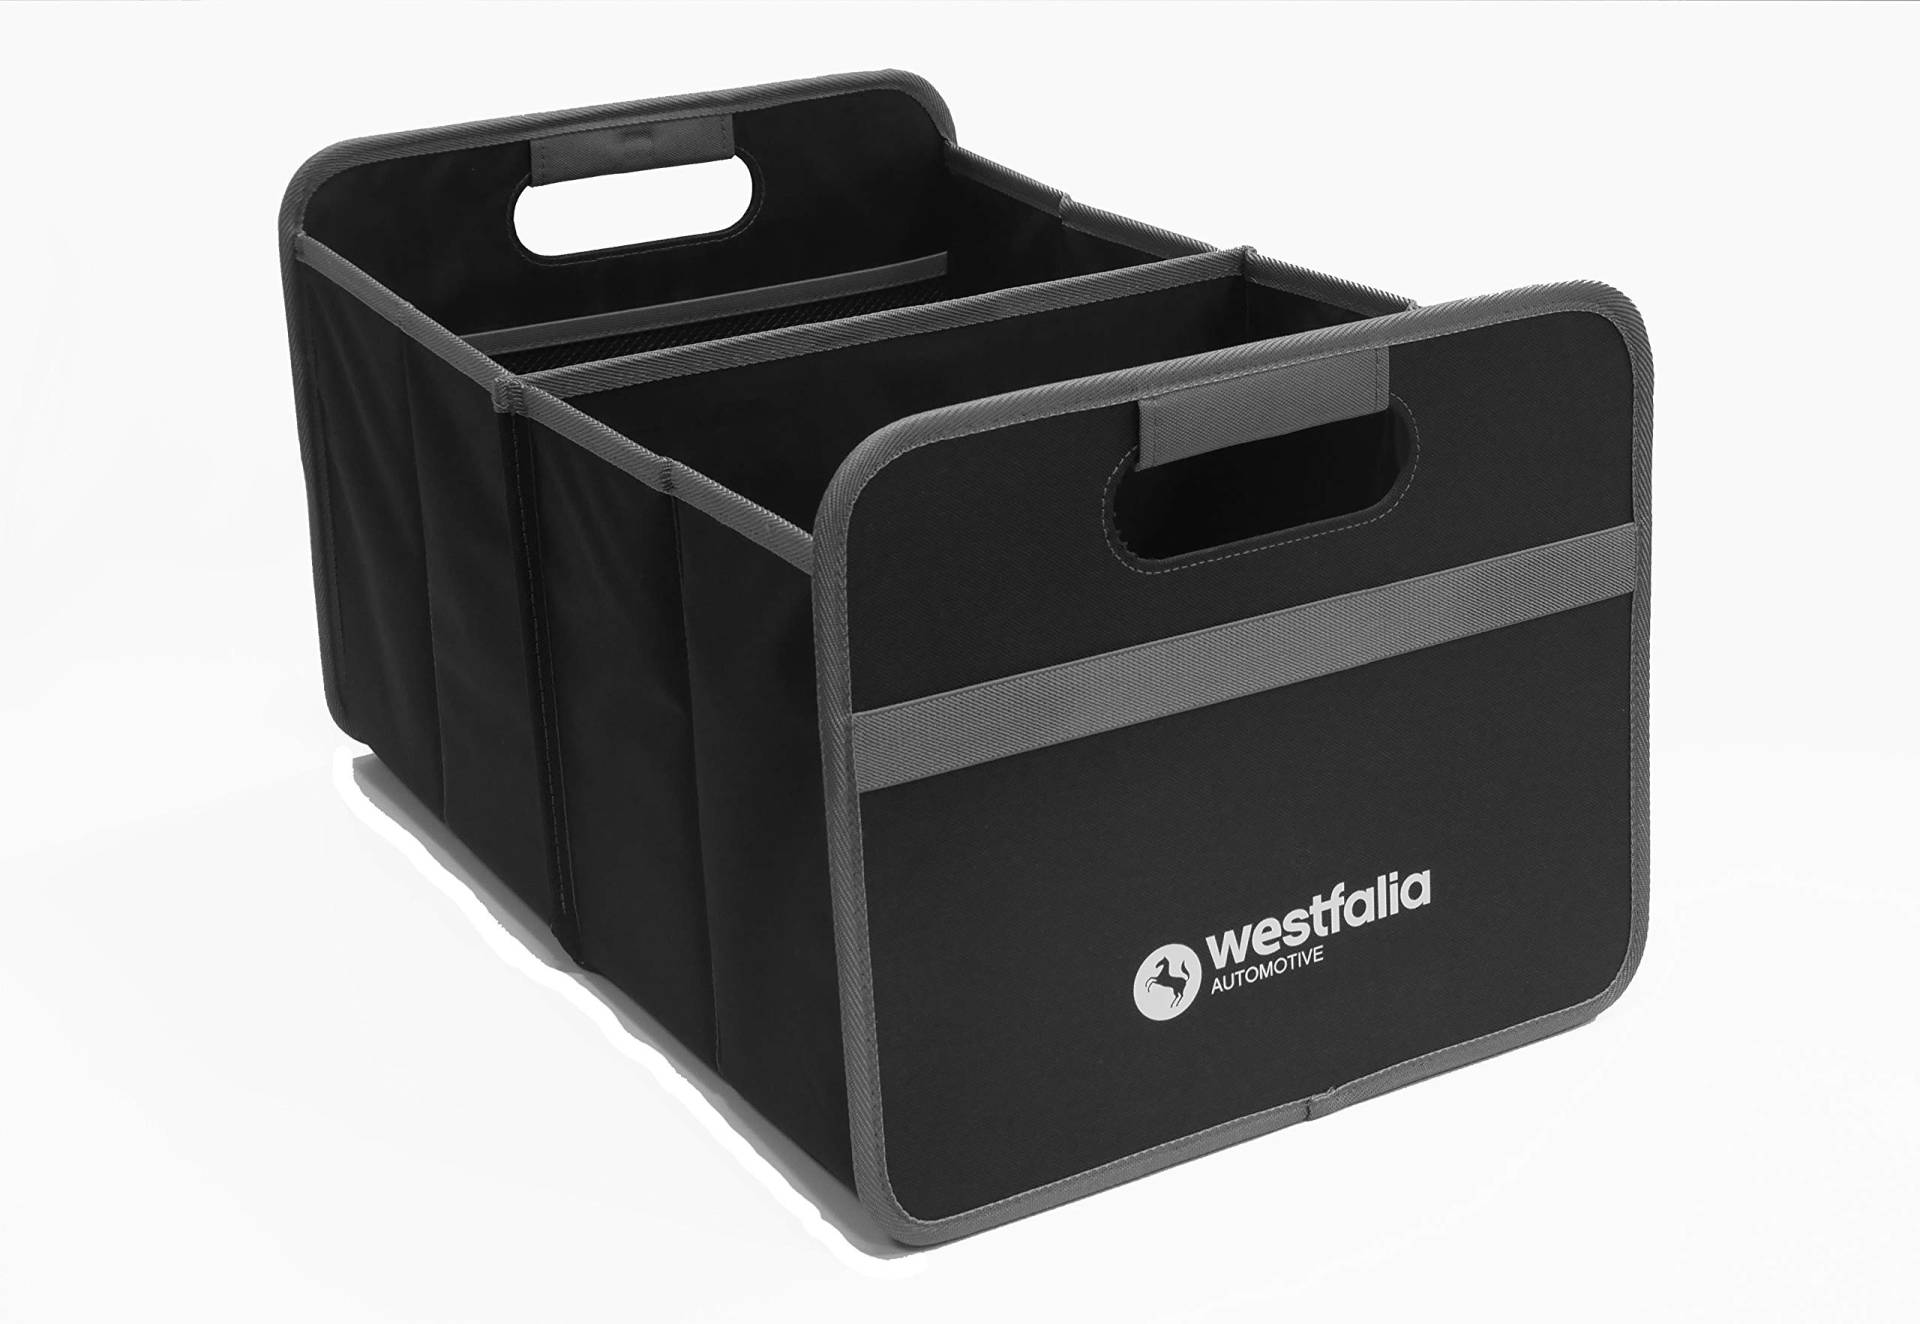 Westfalia Kofferraumtasche - praktischer Organizer für das Auto - 30 Liter Volumen - faltbar und platzsparend von Westfalia Automotive